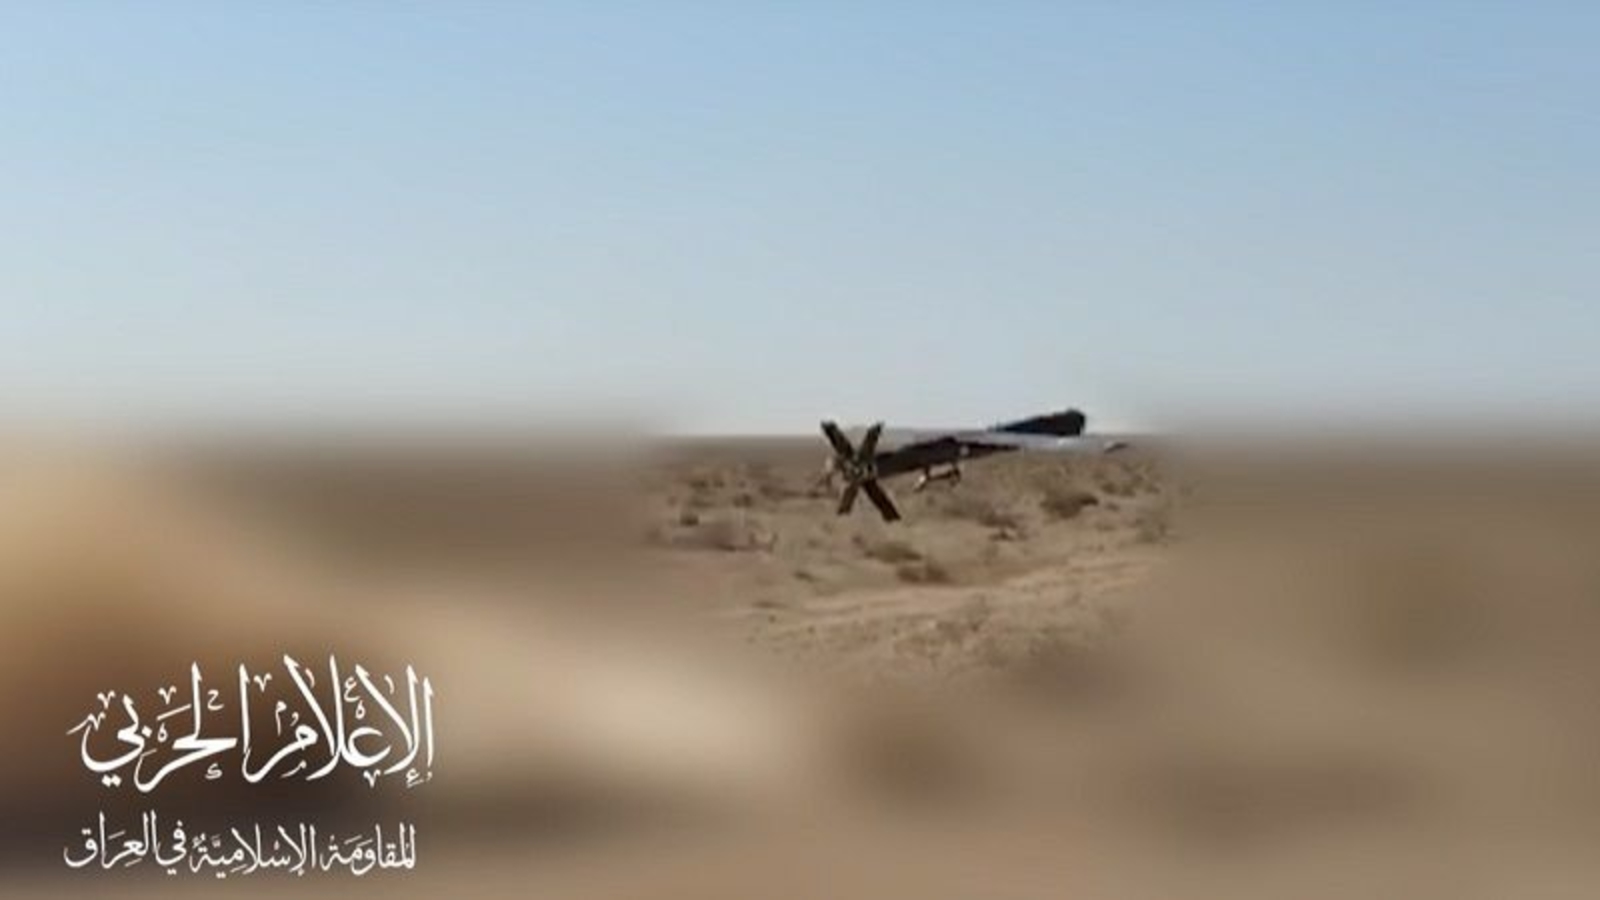 المقاومة الإسلامية العراقية : استهداف قاعدة "خراب الجير" بالعمق السوري